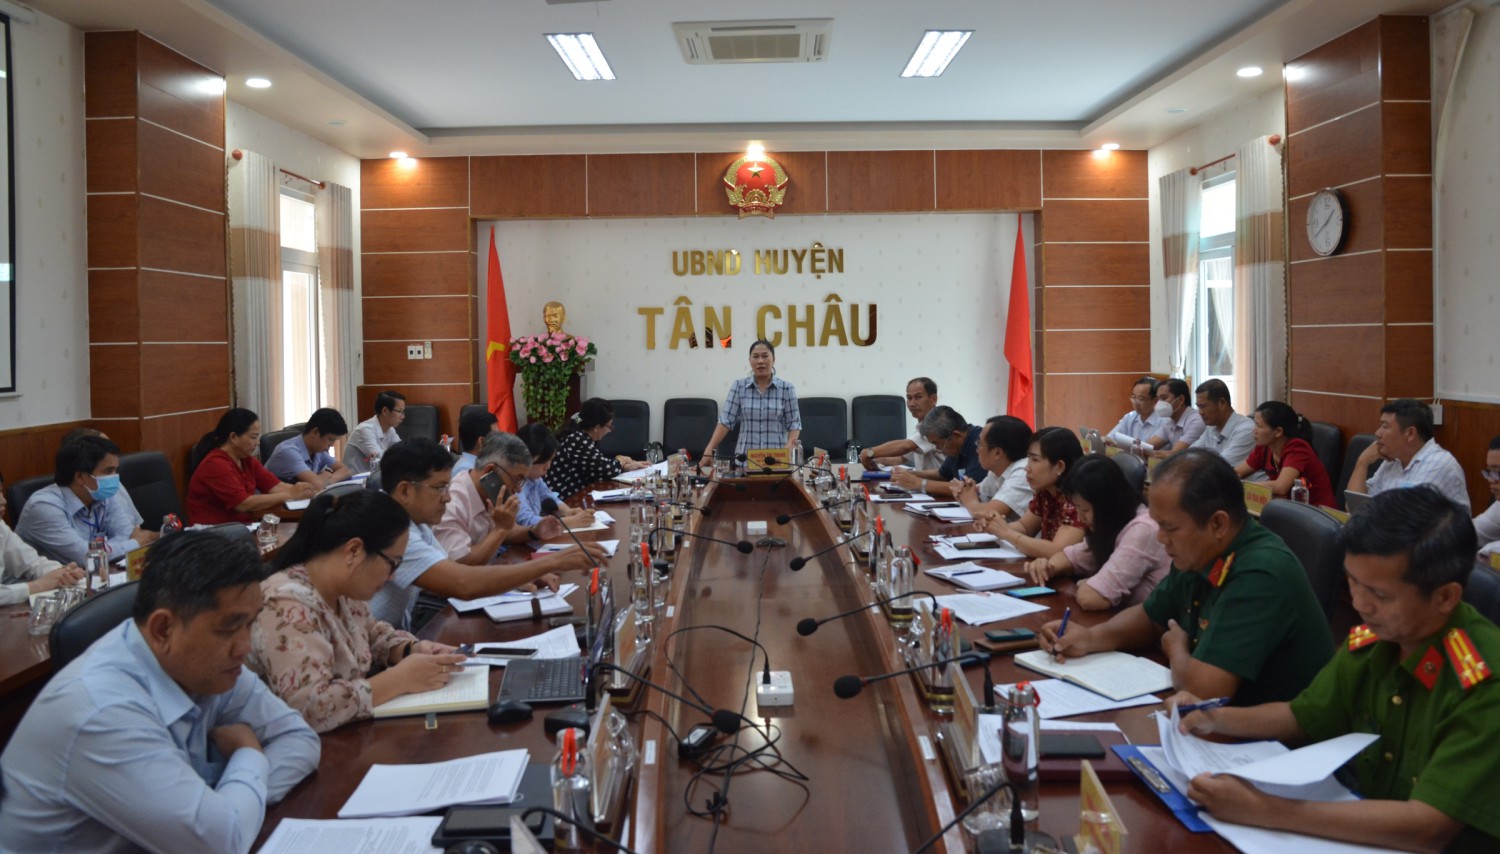 UBND huyện Tân Châu họp giao ban thường kỳ tháng 8